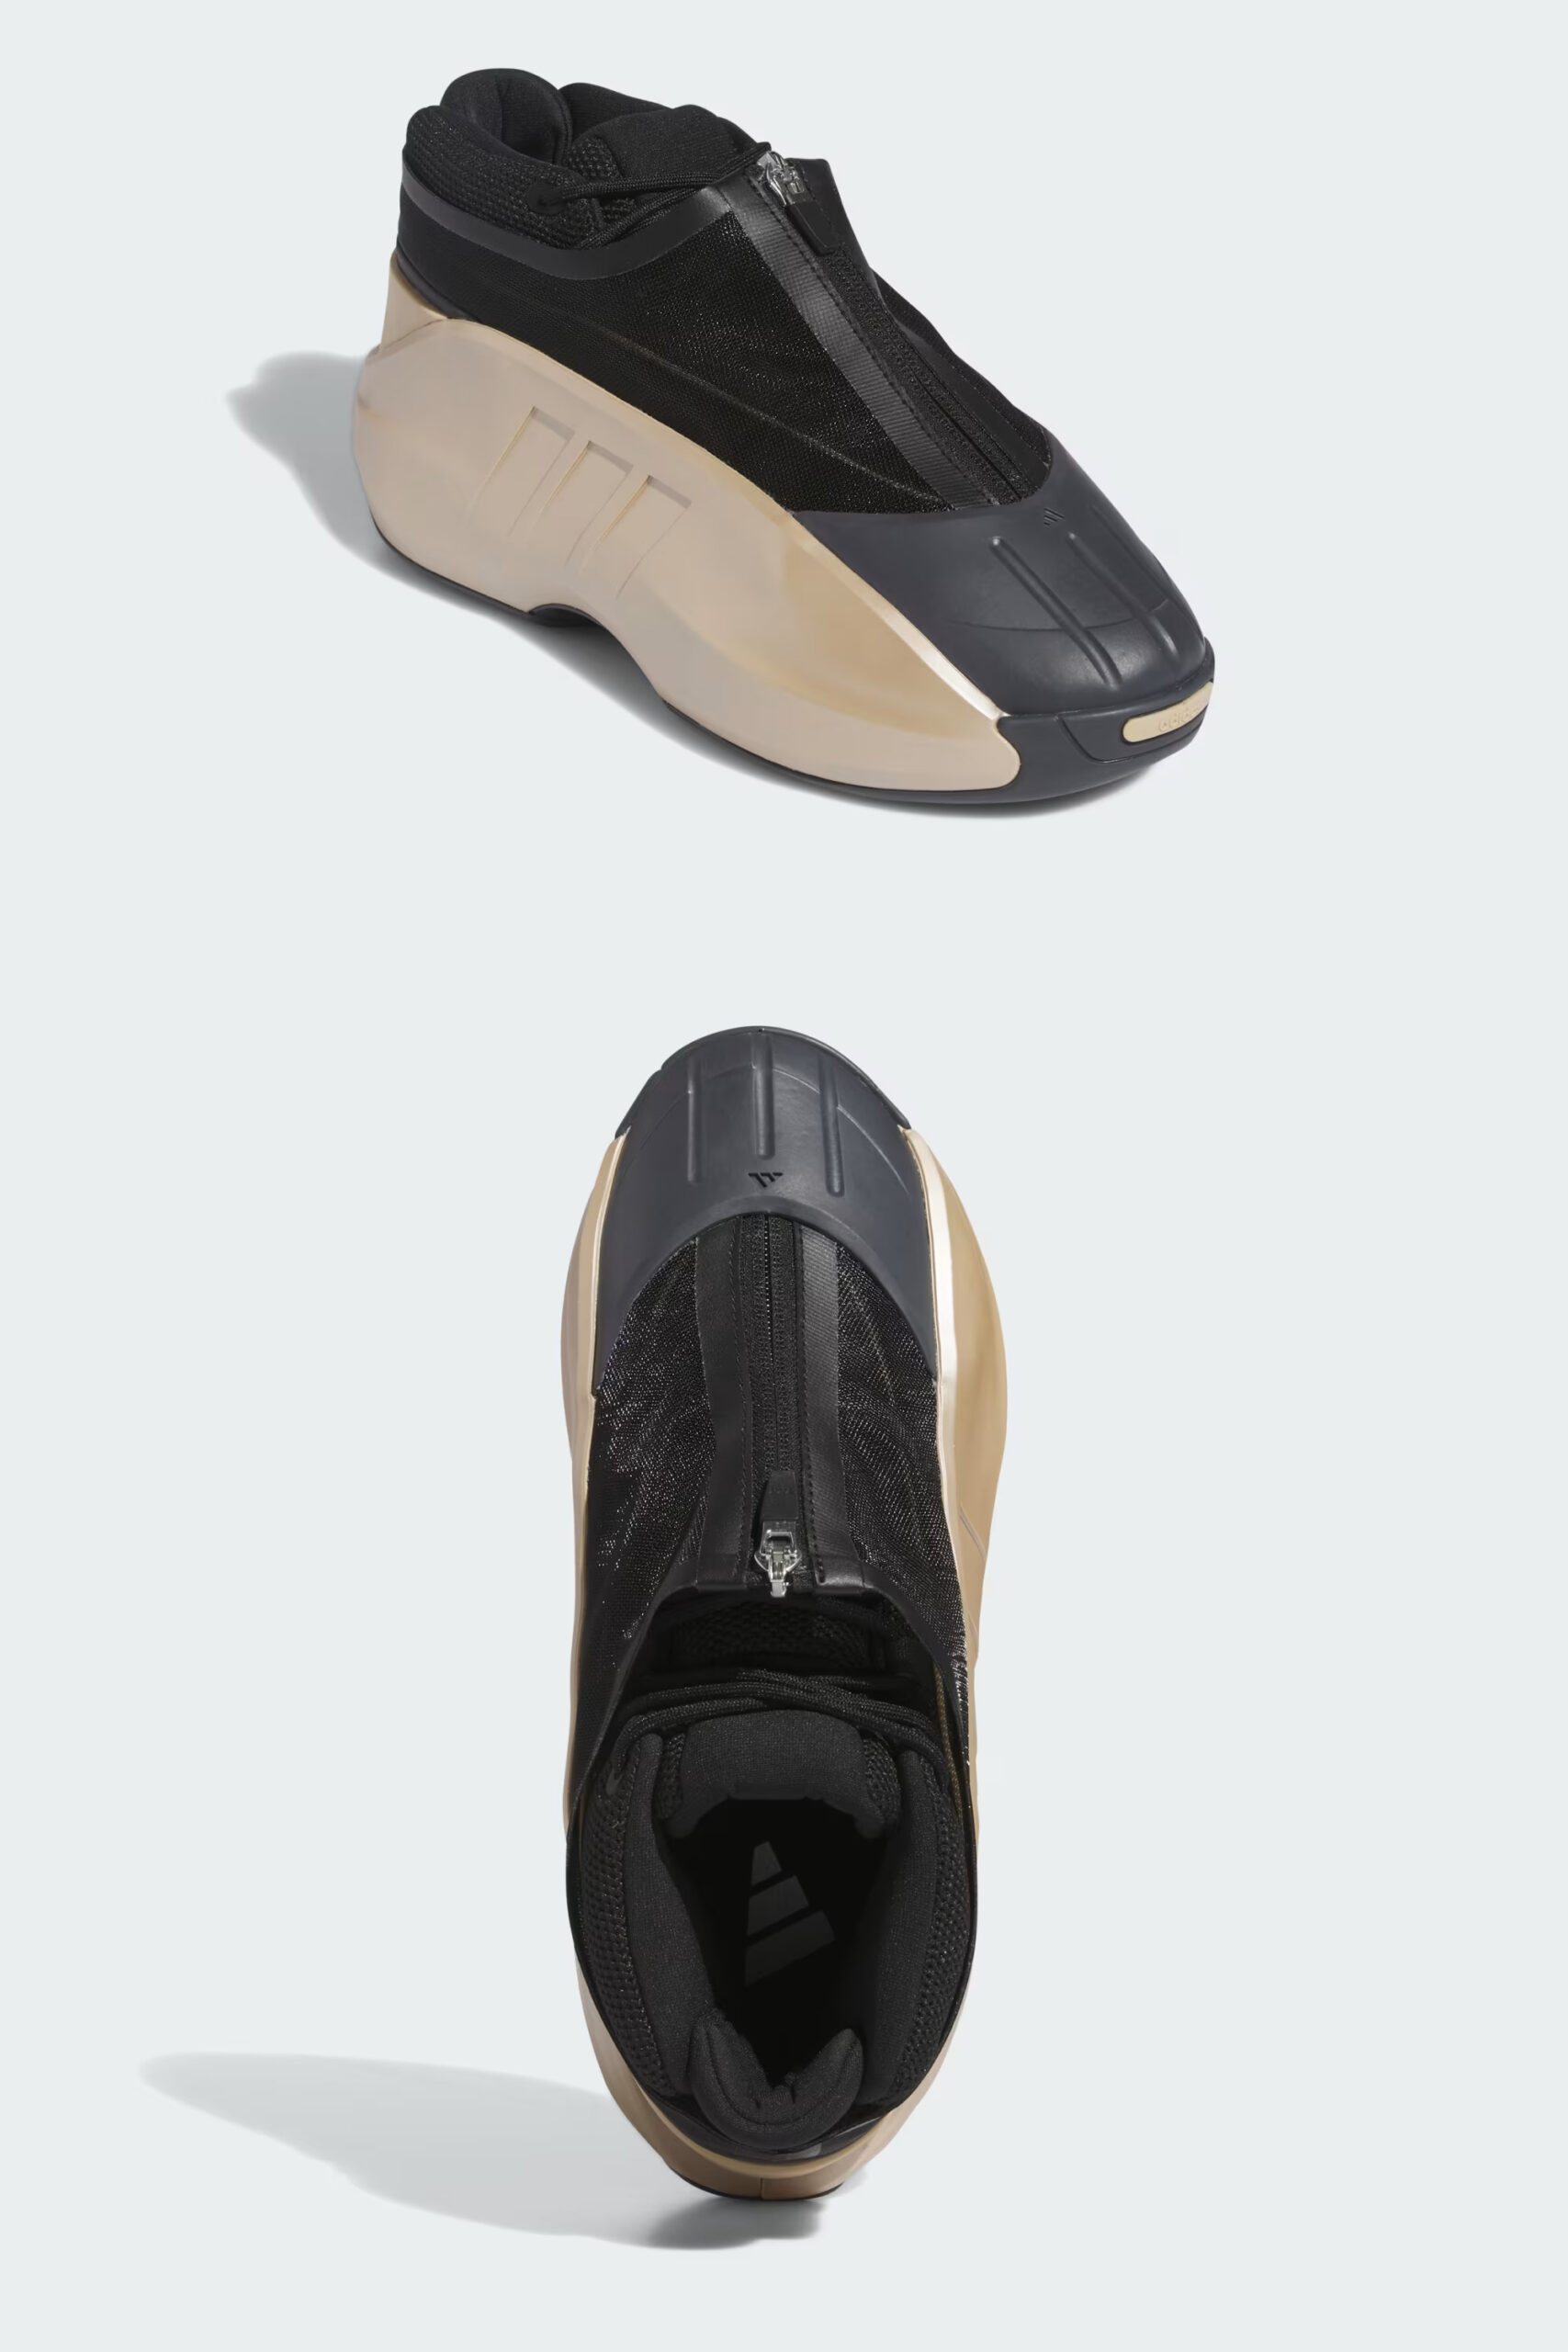 adidas Crazy IIInfinity – Wonder Gold Metallic | sneakerb0b RELEASES